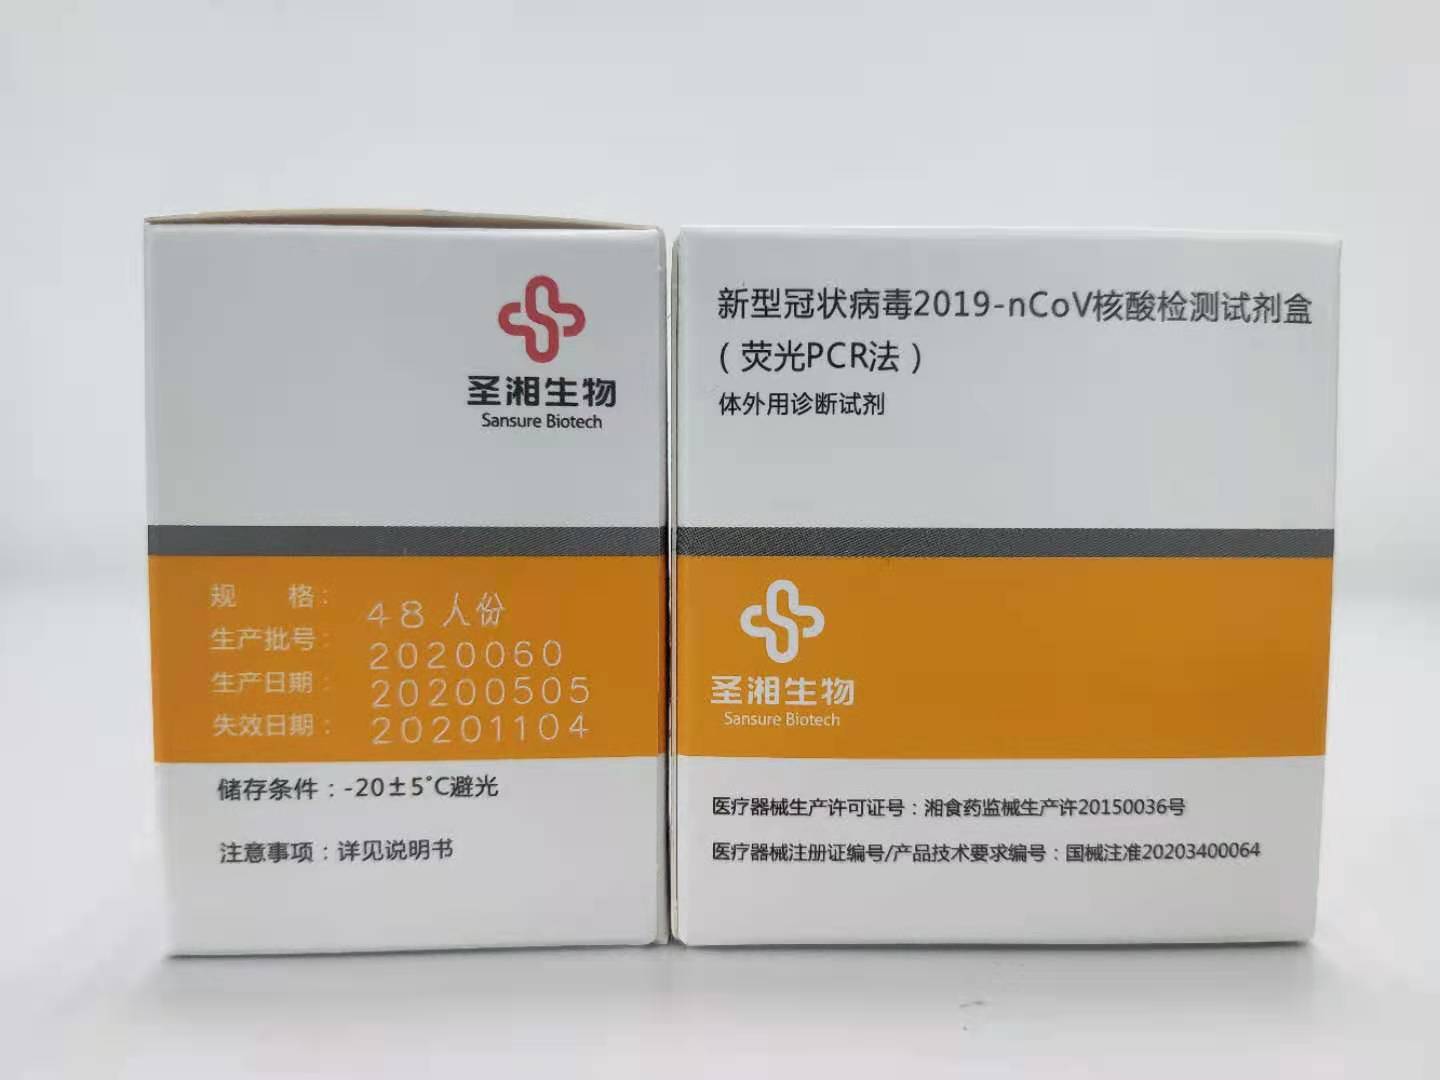 【圣湘】新型冠状病毒2019-nCoV核酸检测试剂盒(荧光PCR法)-云医购